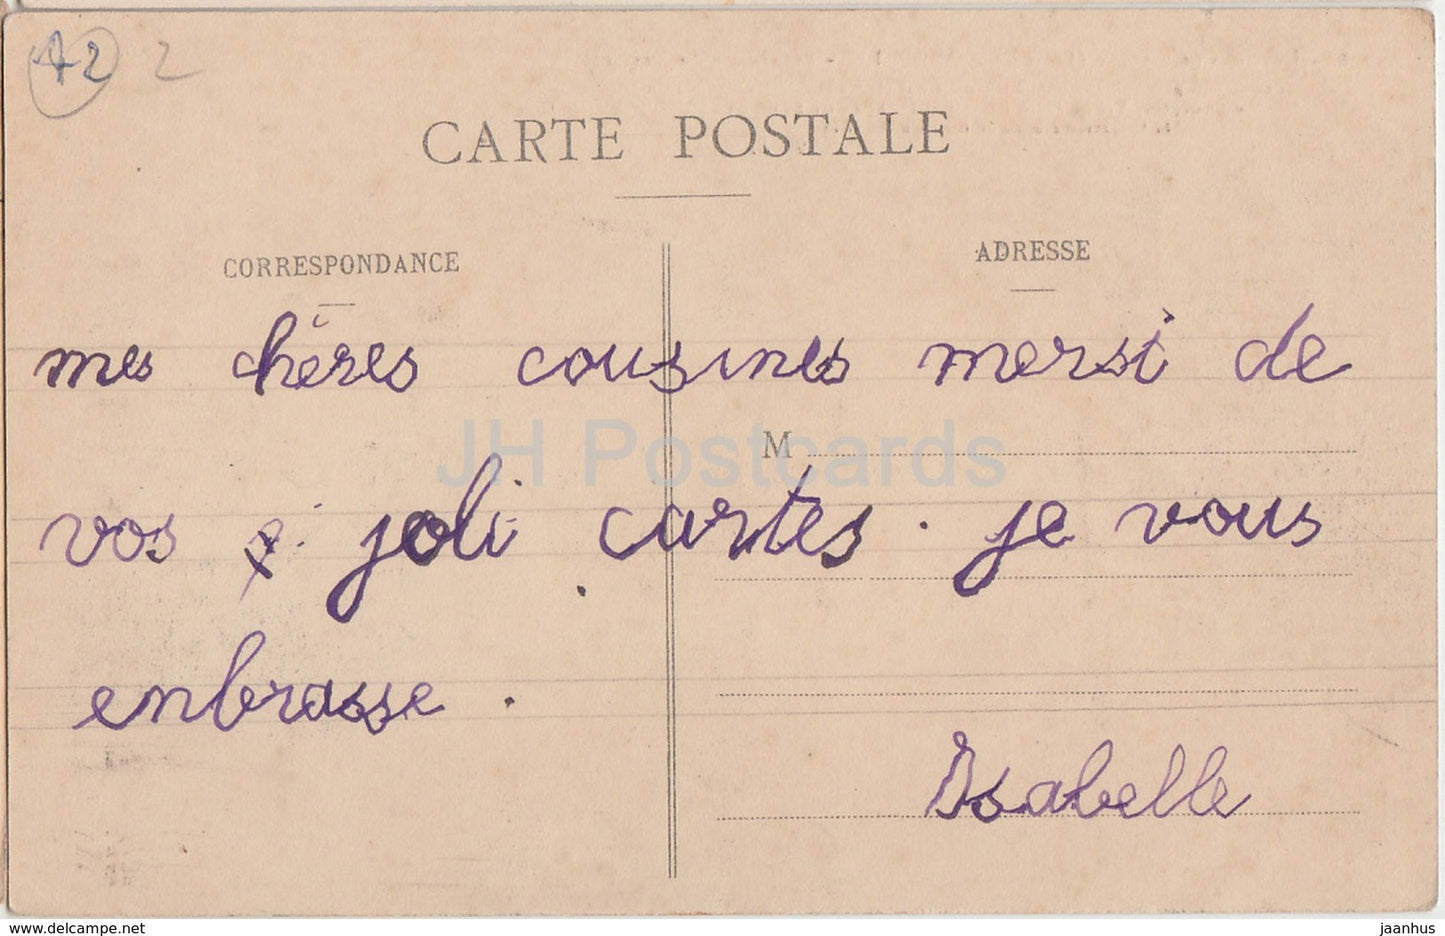 Environs de Roanne - Cordelle - Les Tours du Verdier - Burgruine - 258 - alte Postkarte - Frankreich - gebraucht